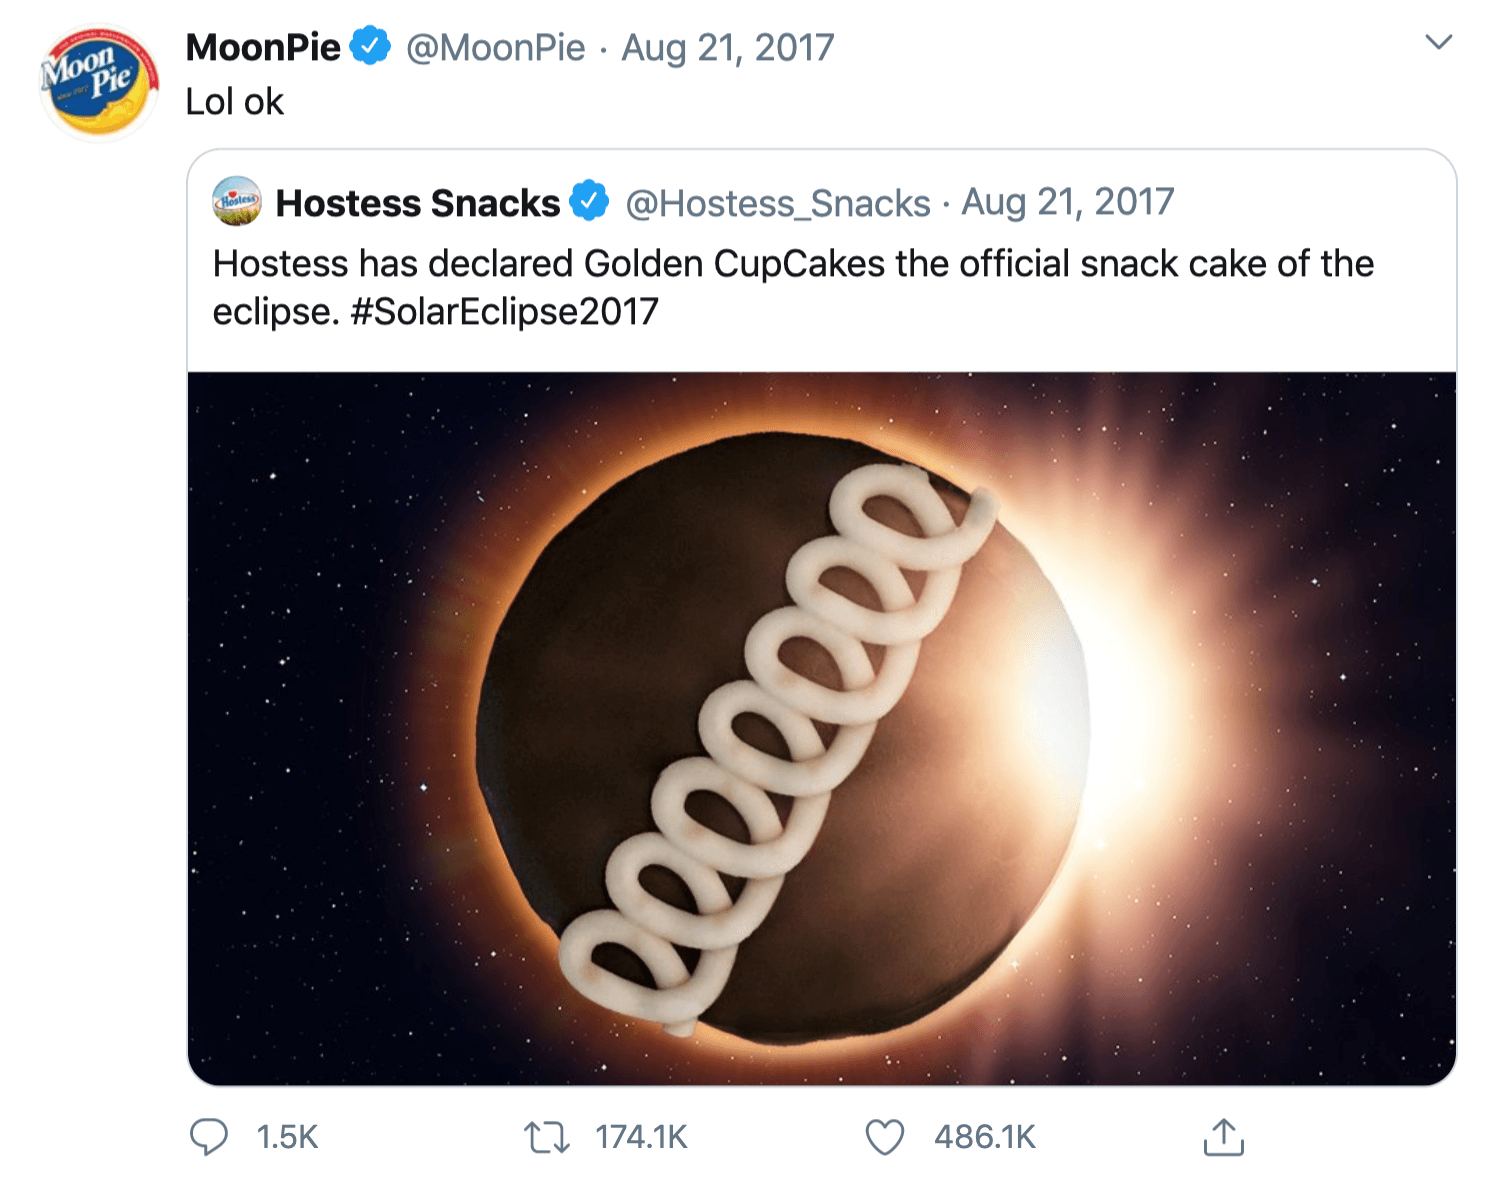 MoonPie Tweet Social Media Campaign